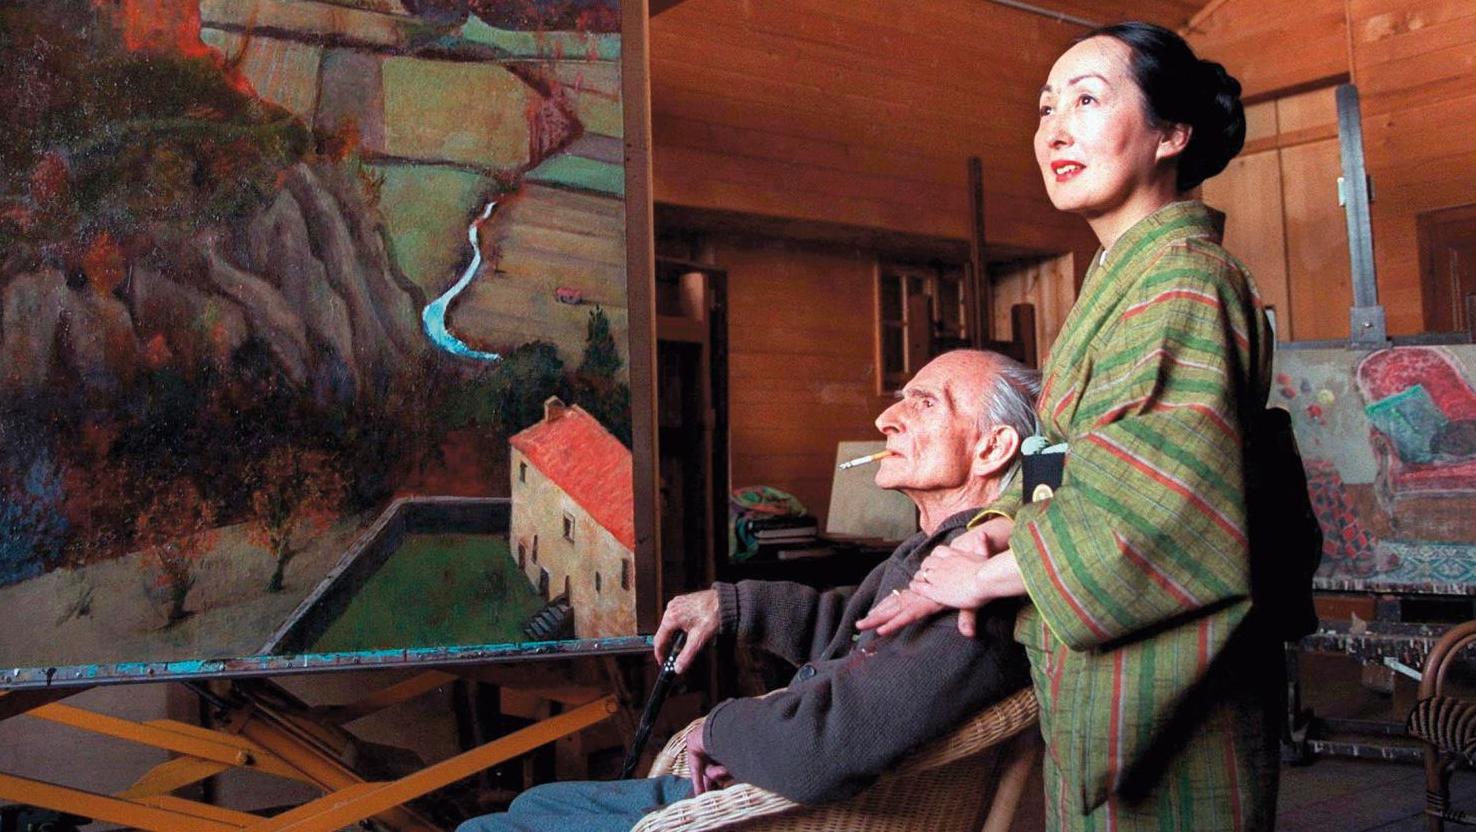 Setsuko, la veuve de Balthus, est également une artiste accomplie